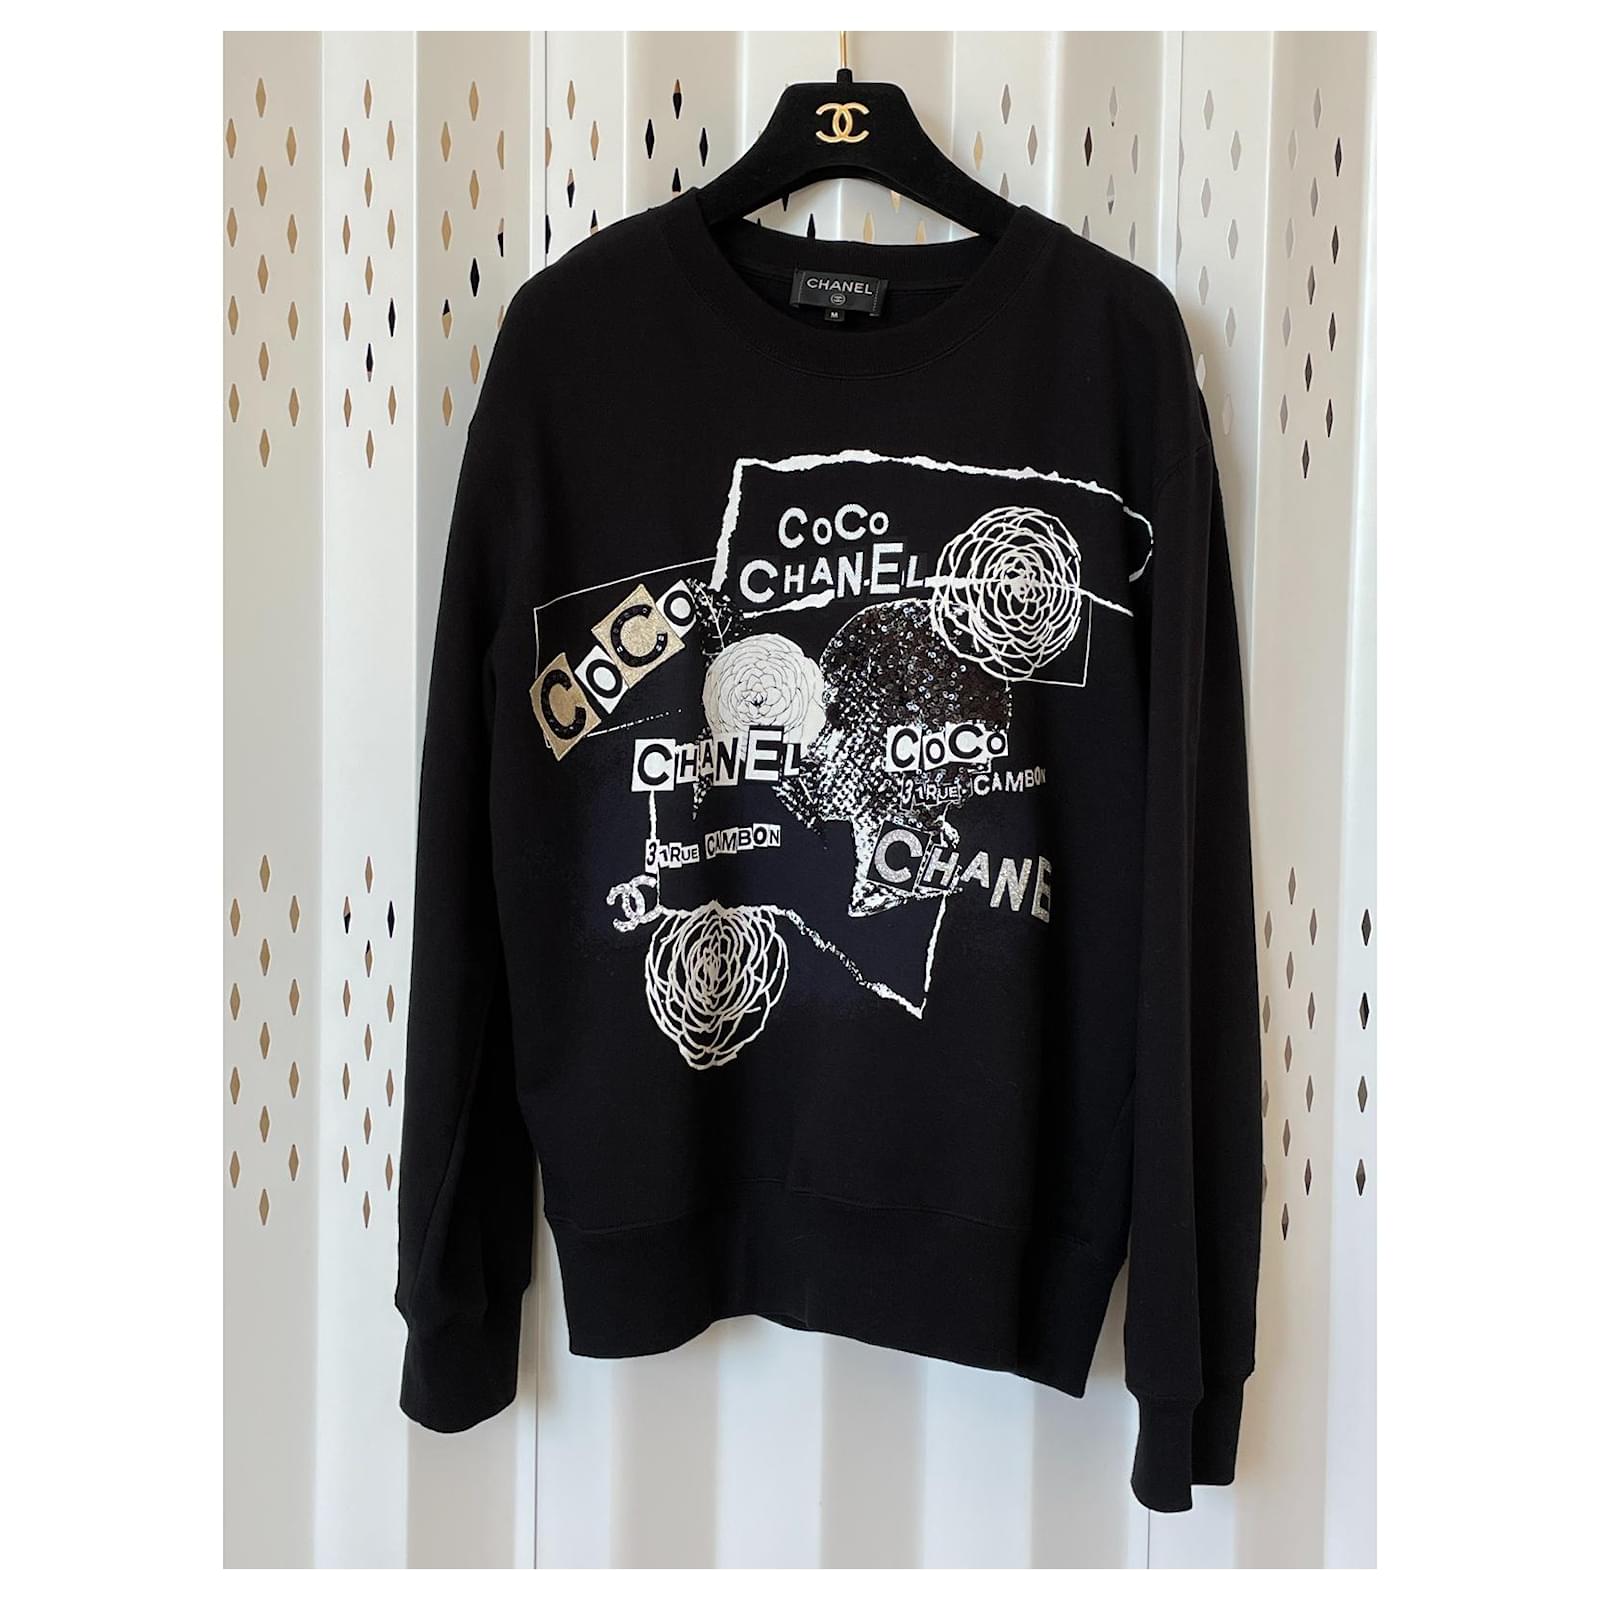 Gucci sweatshirt black - Gem